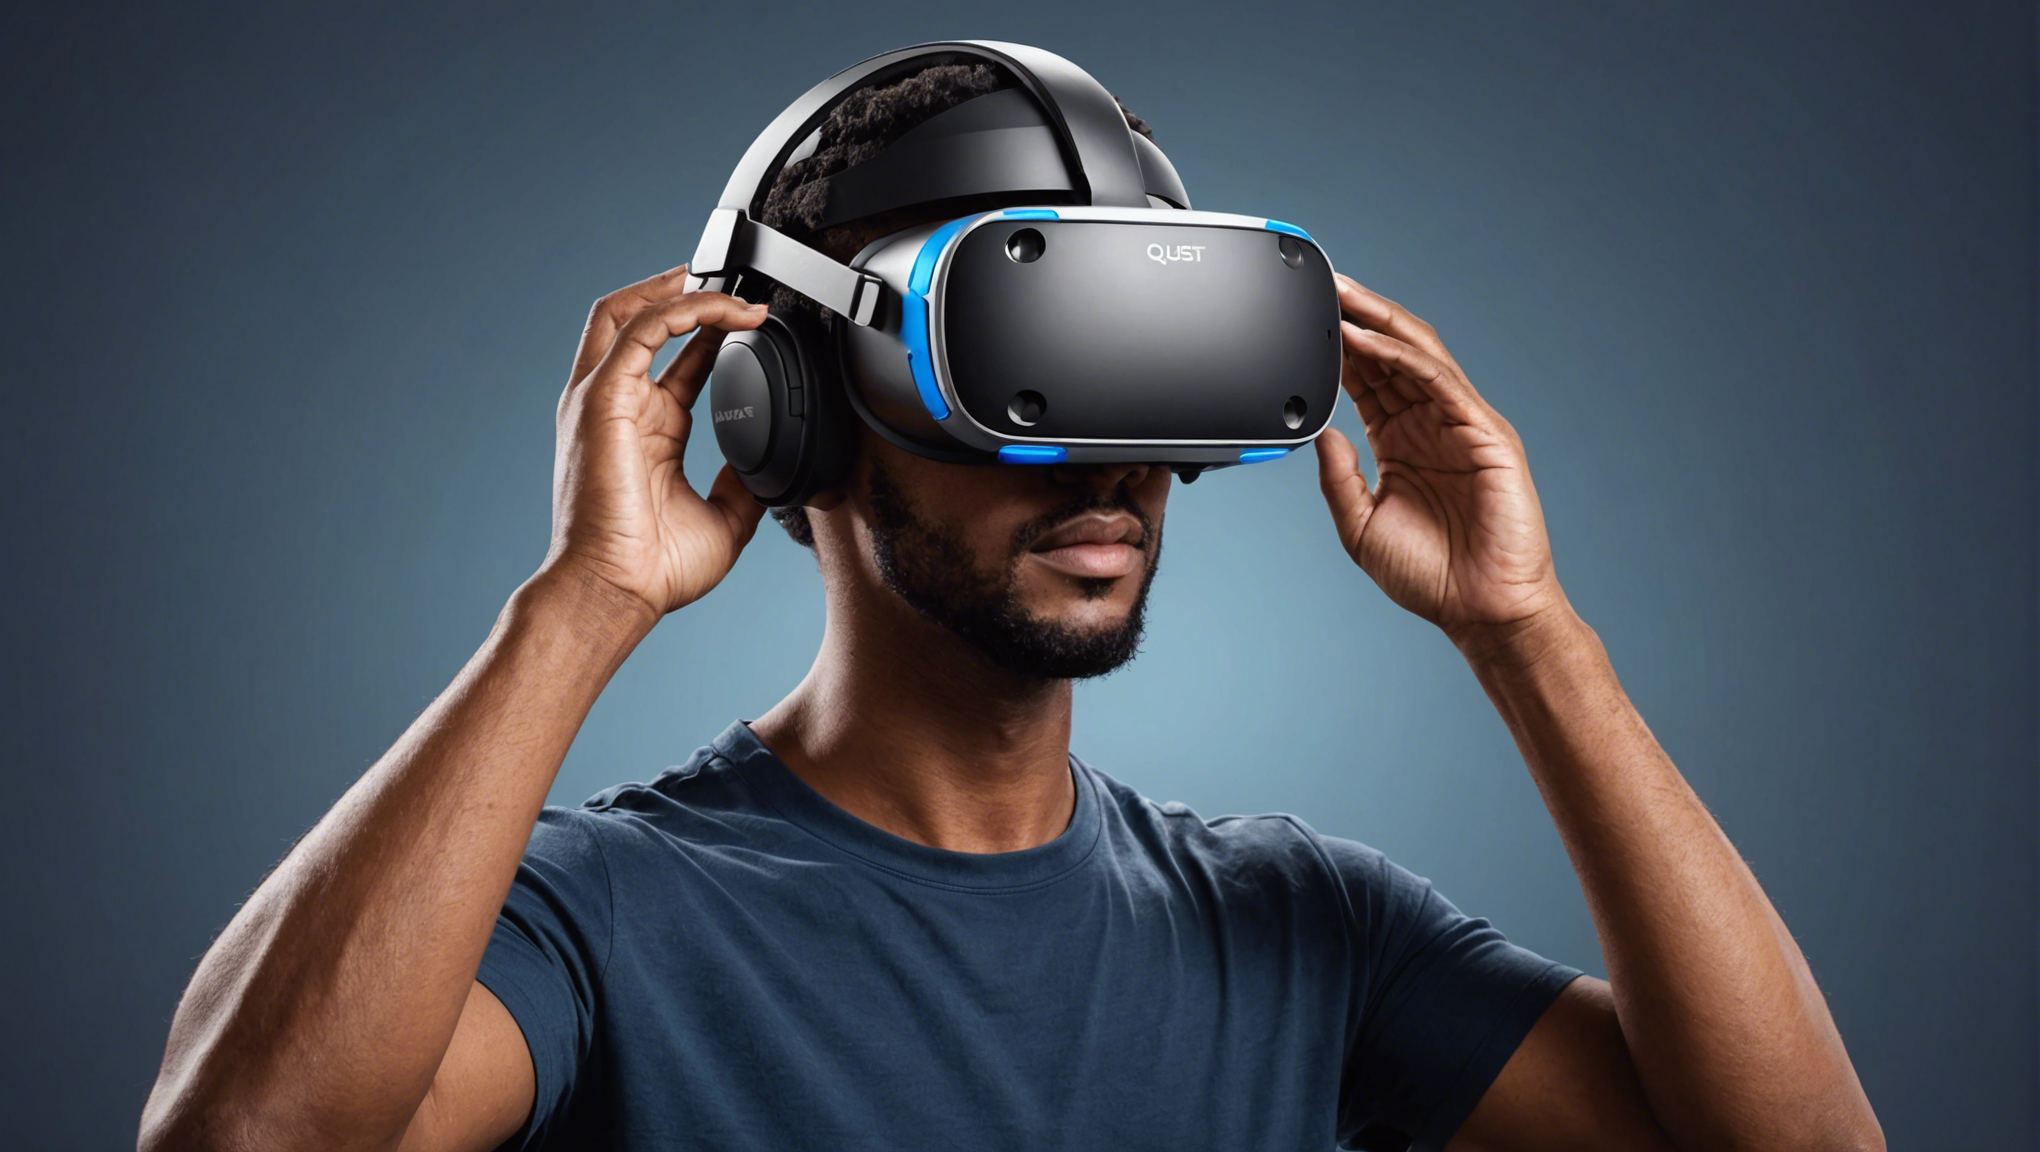 découvrez le casque vr meta quest 3, la dernière révolution en matière de divertissement virtuel. plongez dans des expériences immersives et explorez un nouveau monde de divertissement avec ce casque de réalité virtuelle innovant.